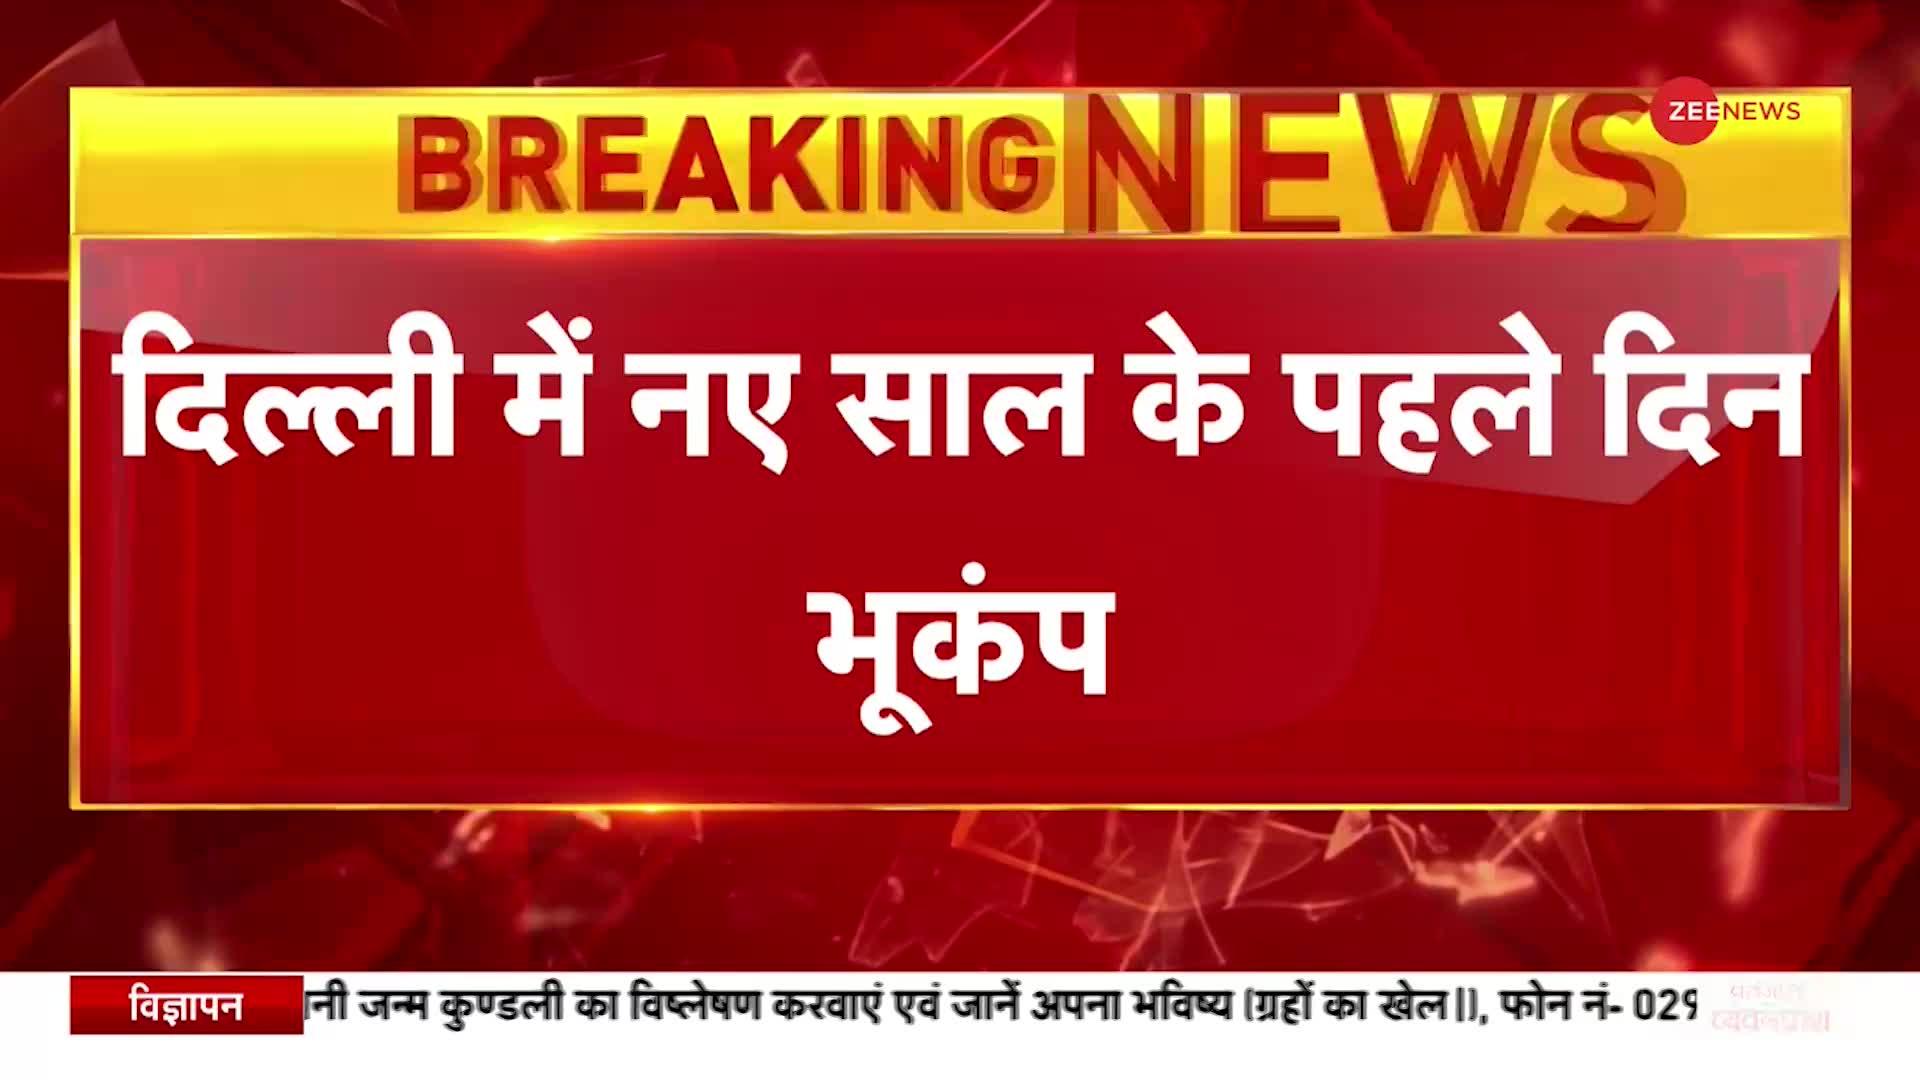 Breaking News: Delhi-NCR में नए साल के पहले दिन भूकंप के झटके, भूकंप की तीव्रता 3.8 मापी गई